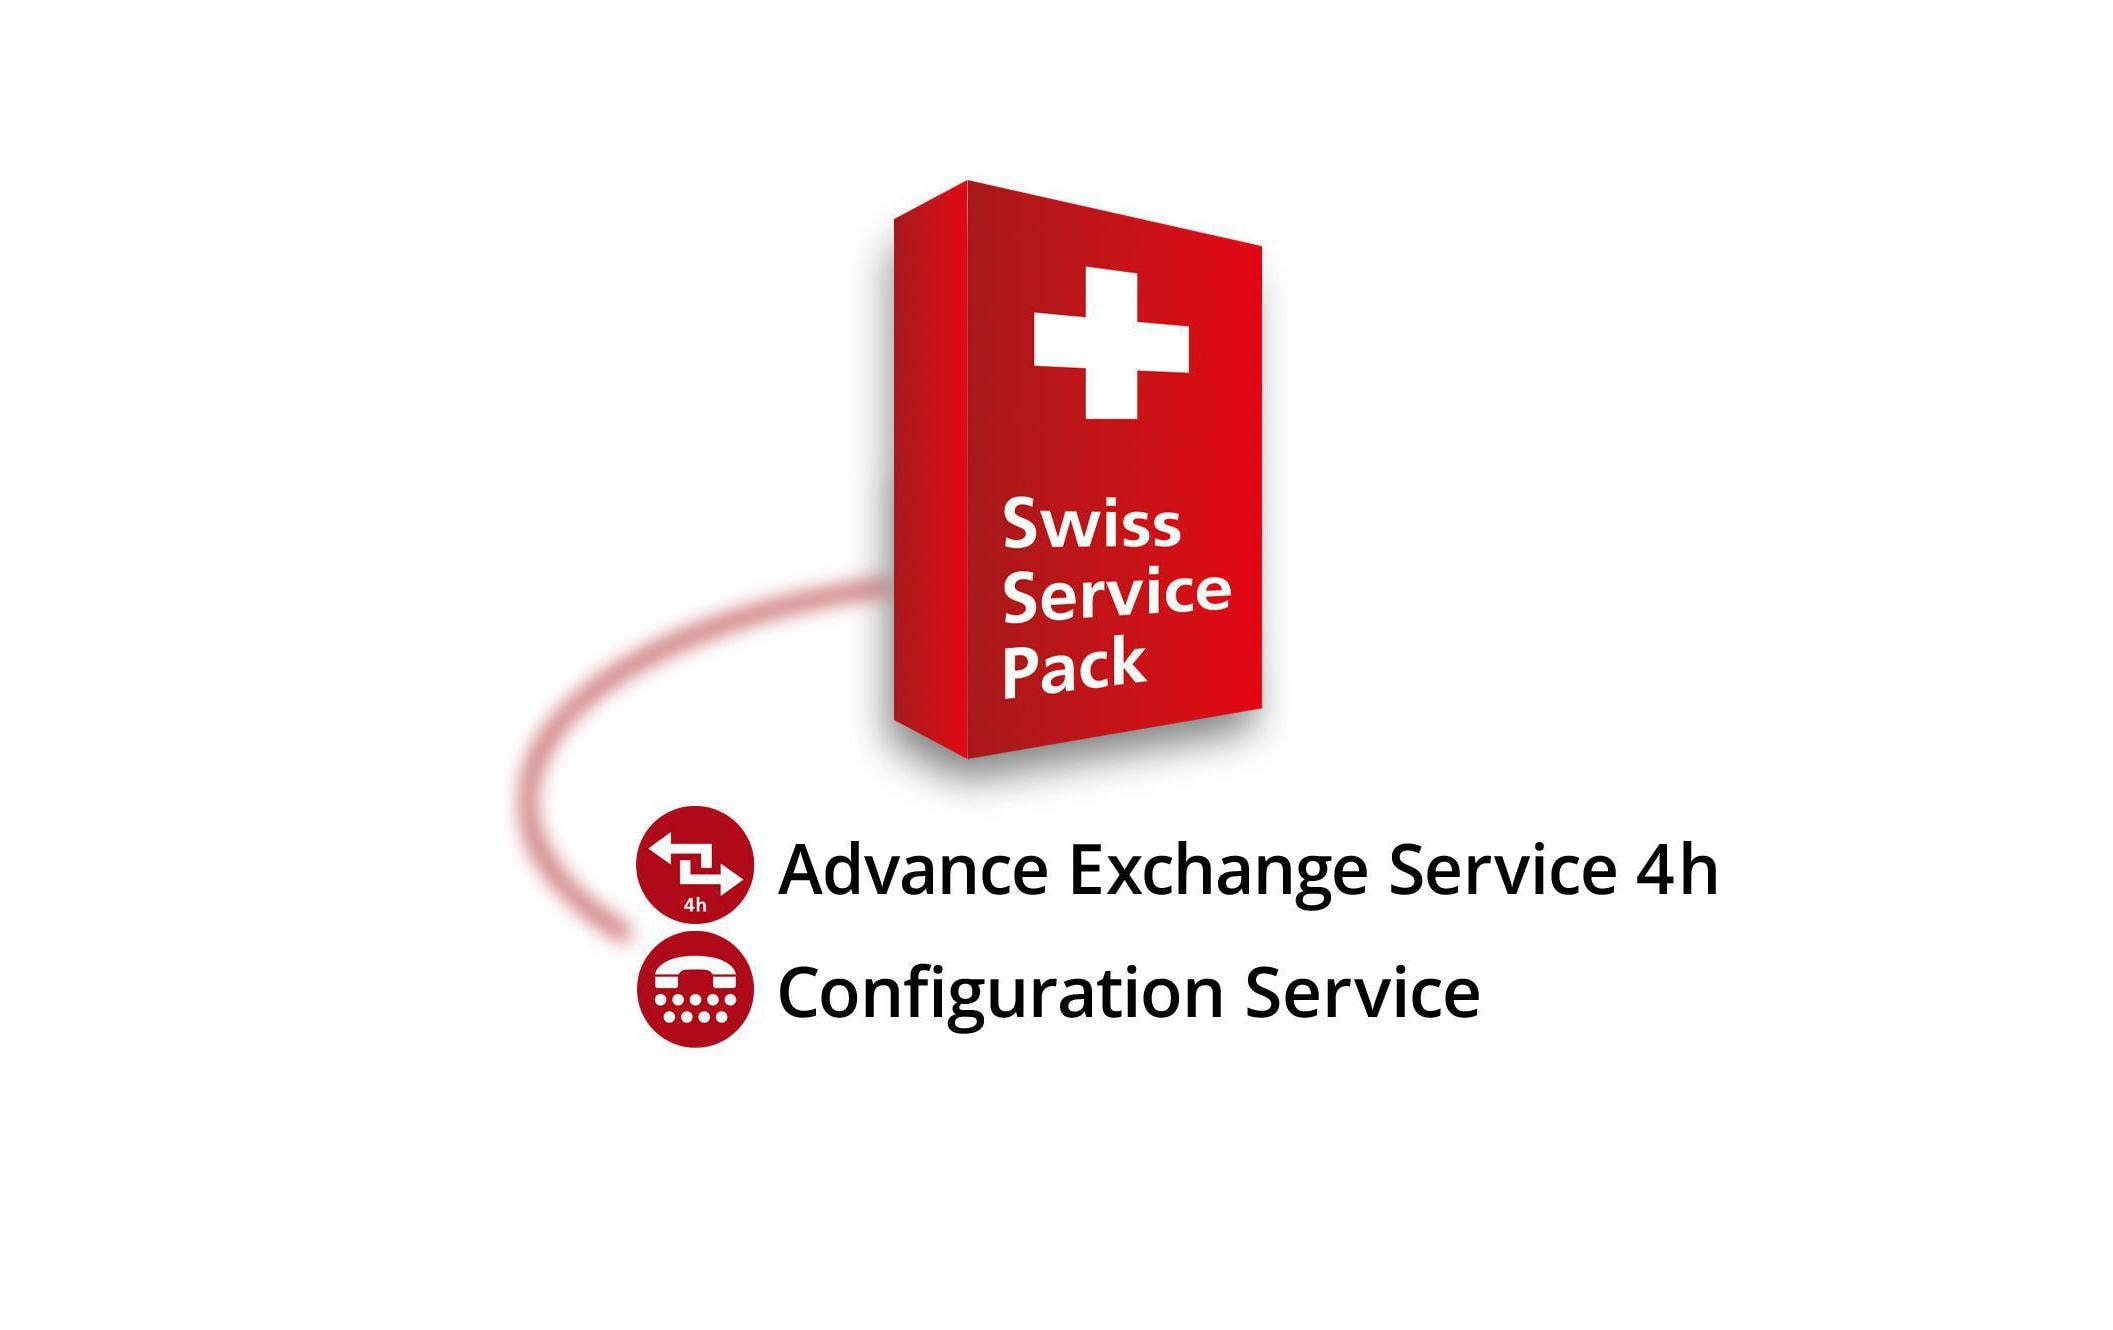 Zyxel Garantie Swiss Service Pack 4h, CHF 1K - 2999 2 Jahre